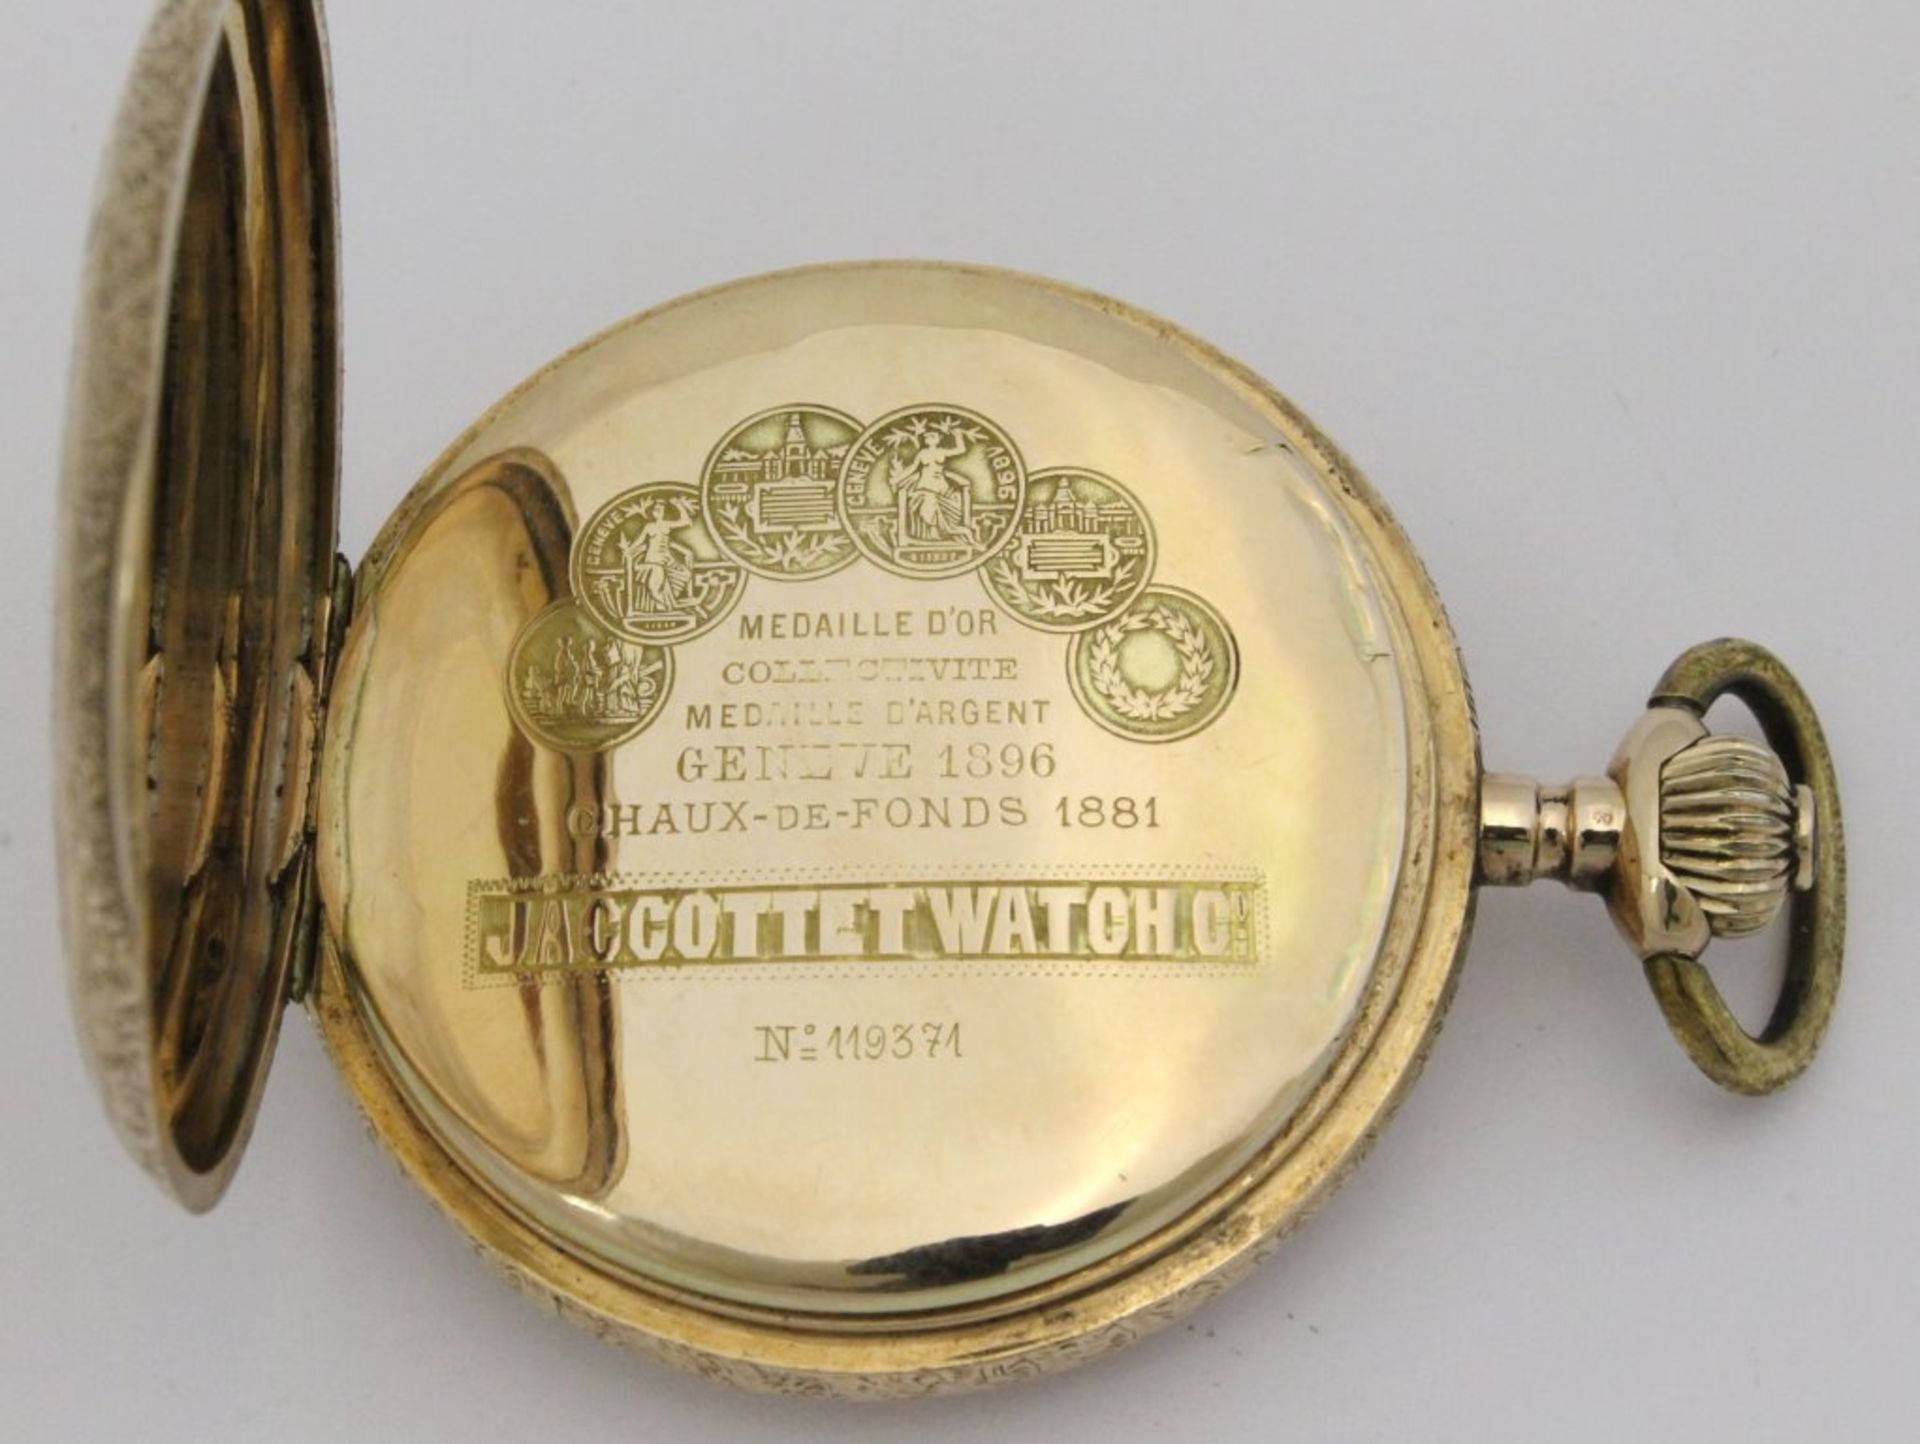 Goldene Taschenuhr / Savonette Jaccotte Watch Co.Vergoldetes, 17steiniges Messingplatinenwerk mit - Bild 4 aus 5